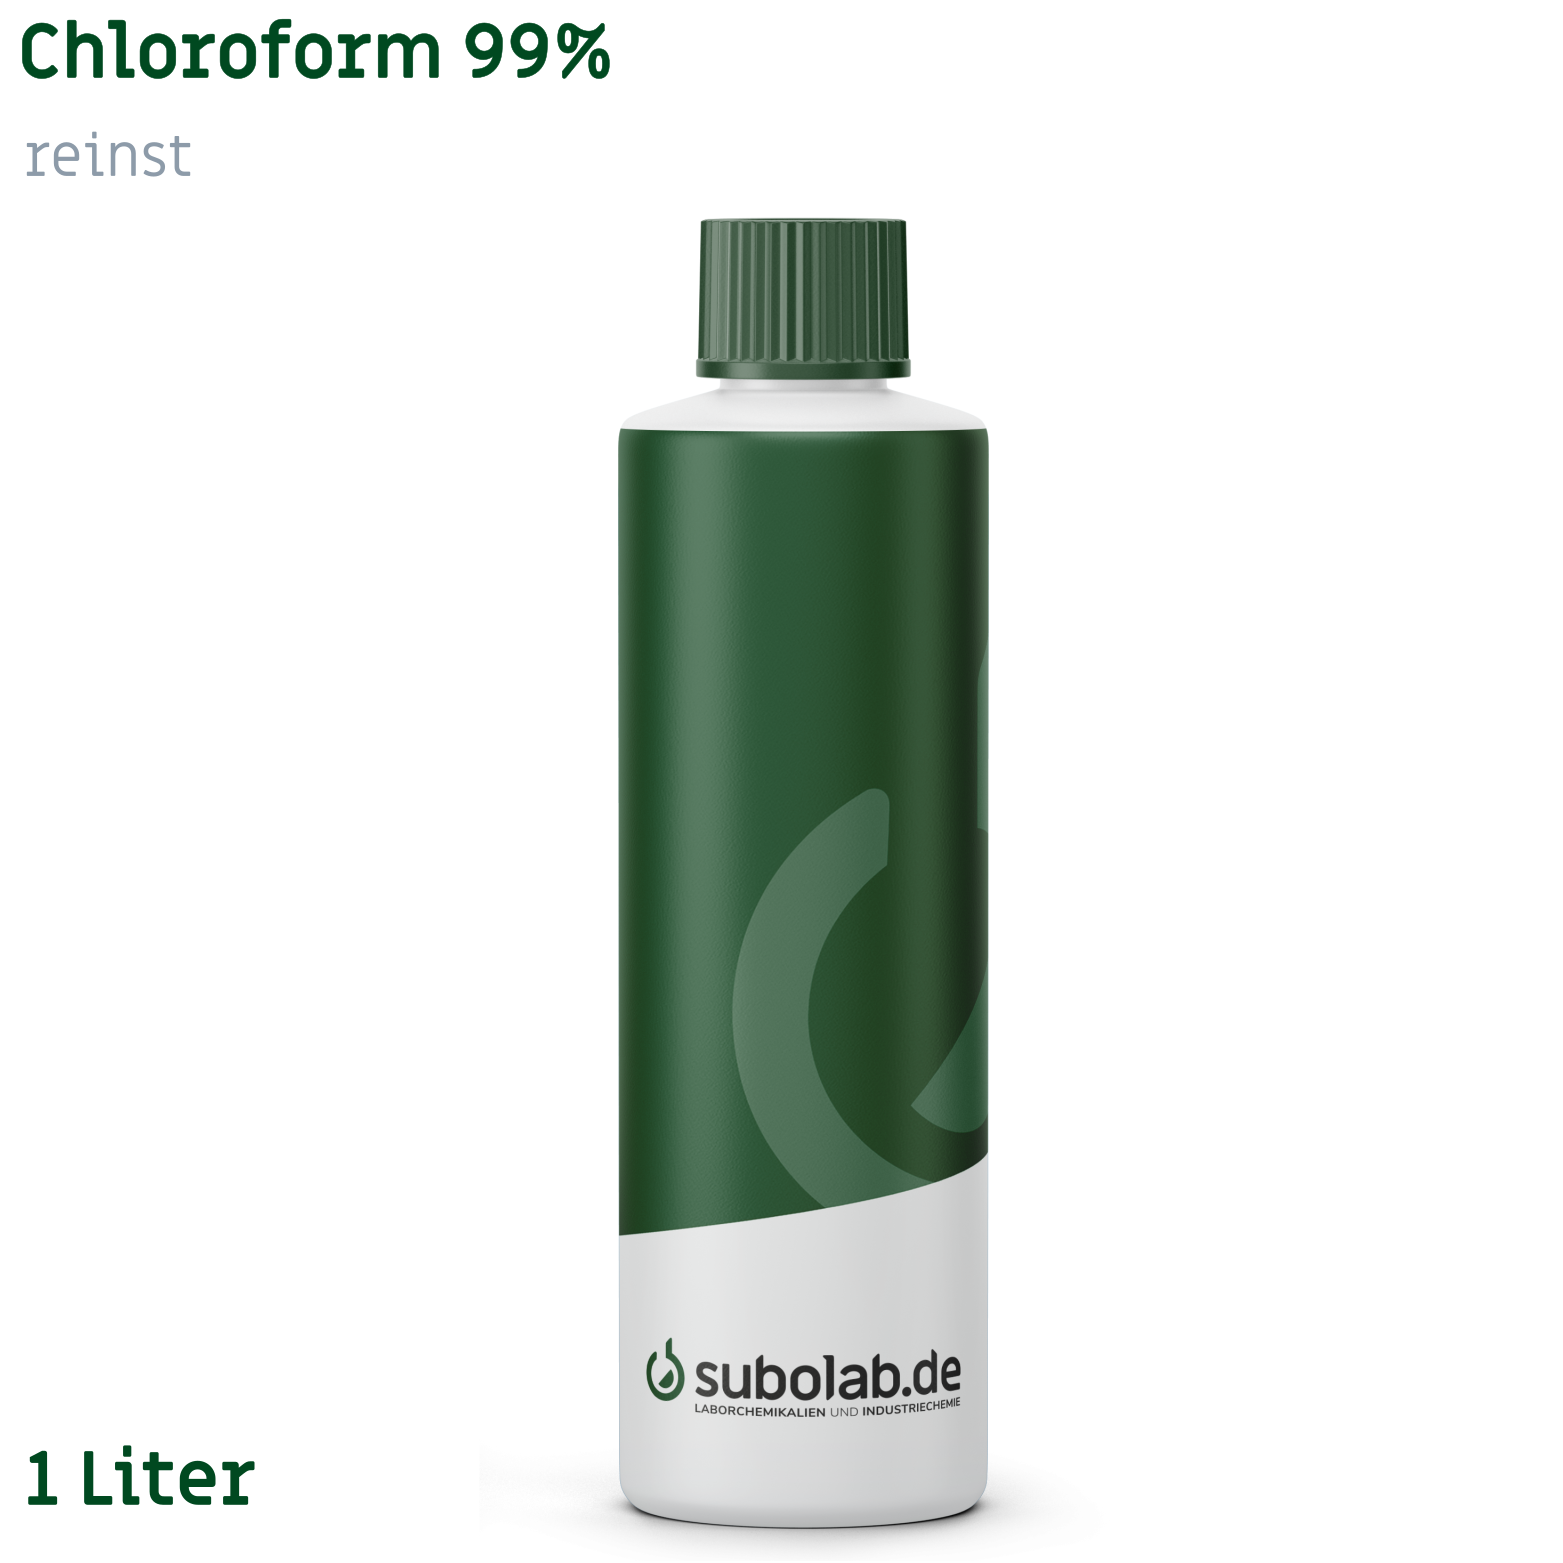 Bild von Chloroform 99% reinst (1 Liter)